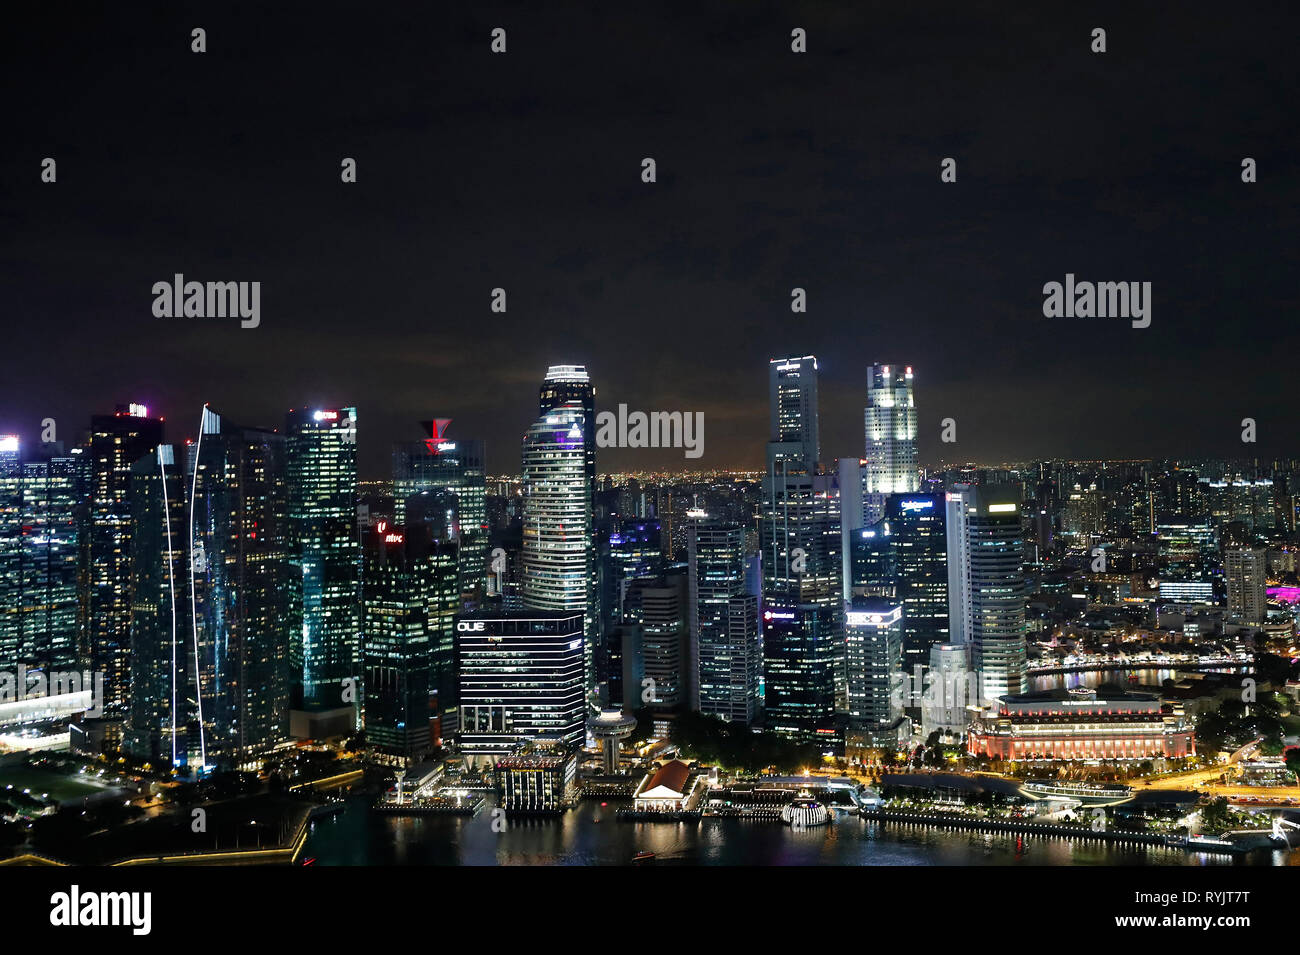 Paysage du quartier financier et d'affaires de Singapour building at night. Clarke Quay et la rivière Singapour. Singapour. Banque D'Images